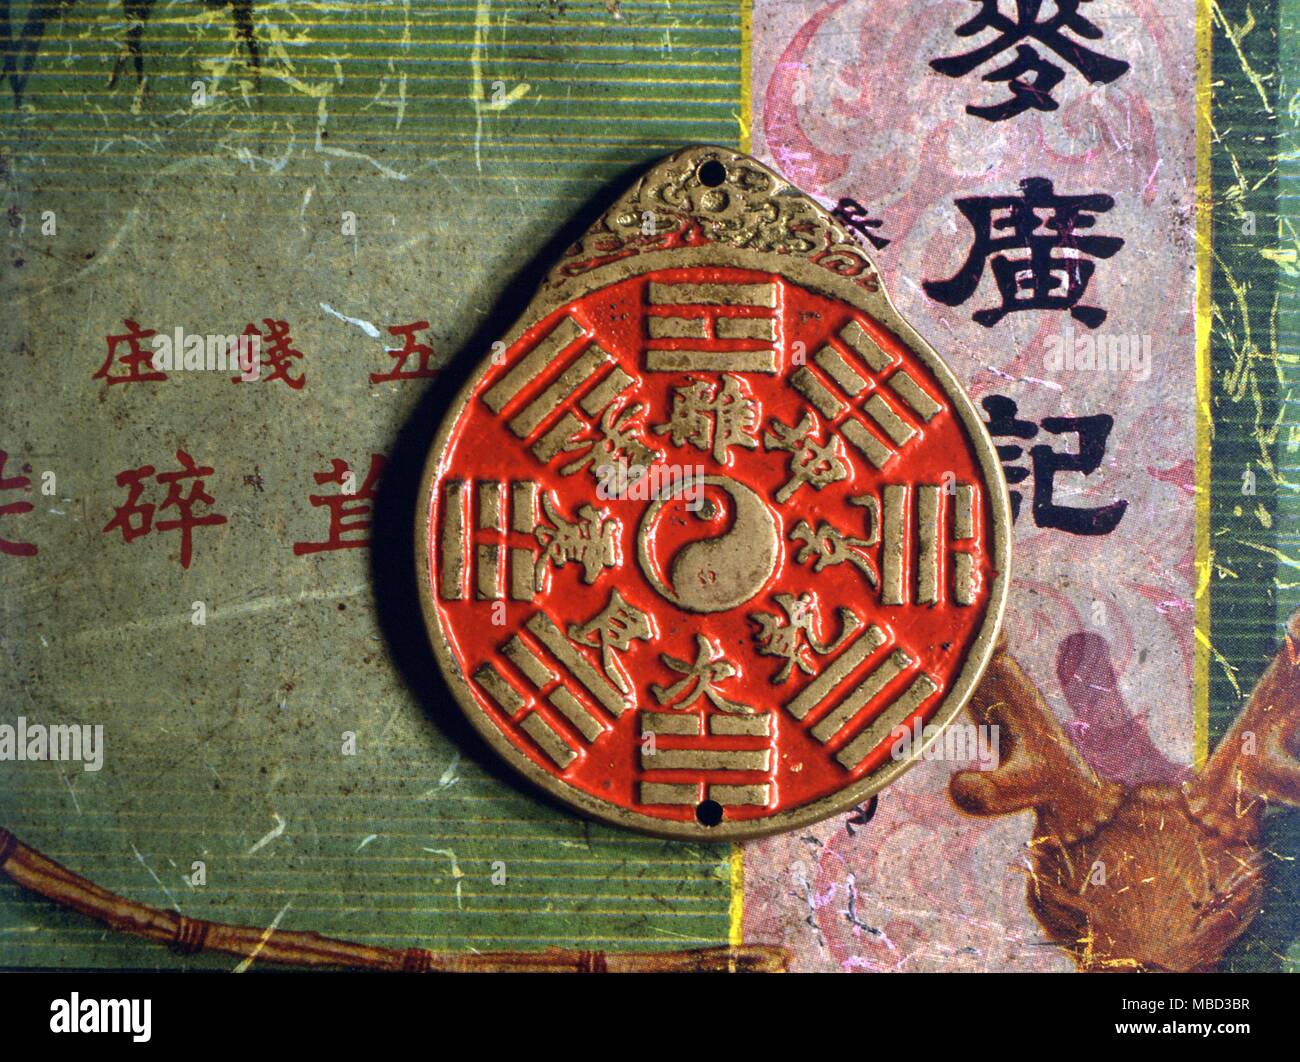 Símbolos - Yin Yang. El Yin Yang (tai chi) representa la dualidad que se encuentra en la raíz de la filosofía taoísta. Ocho trigramas alrededor del centro, con sus correspondientes caracteres chinos. Foto de stock